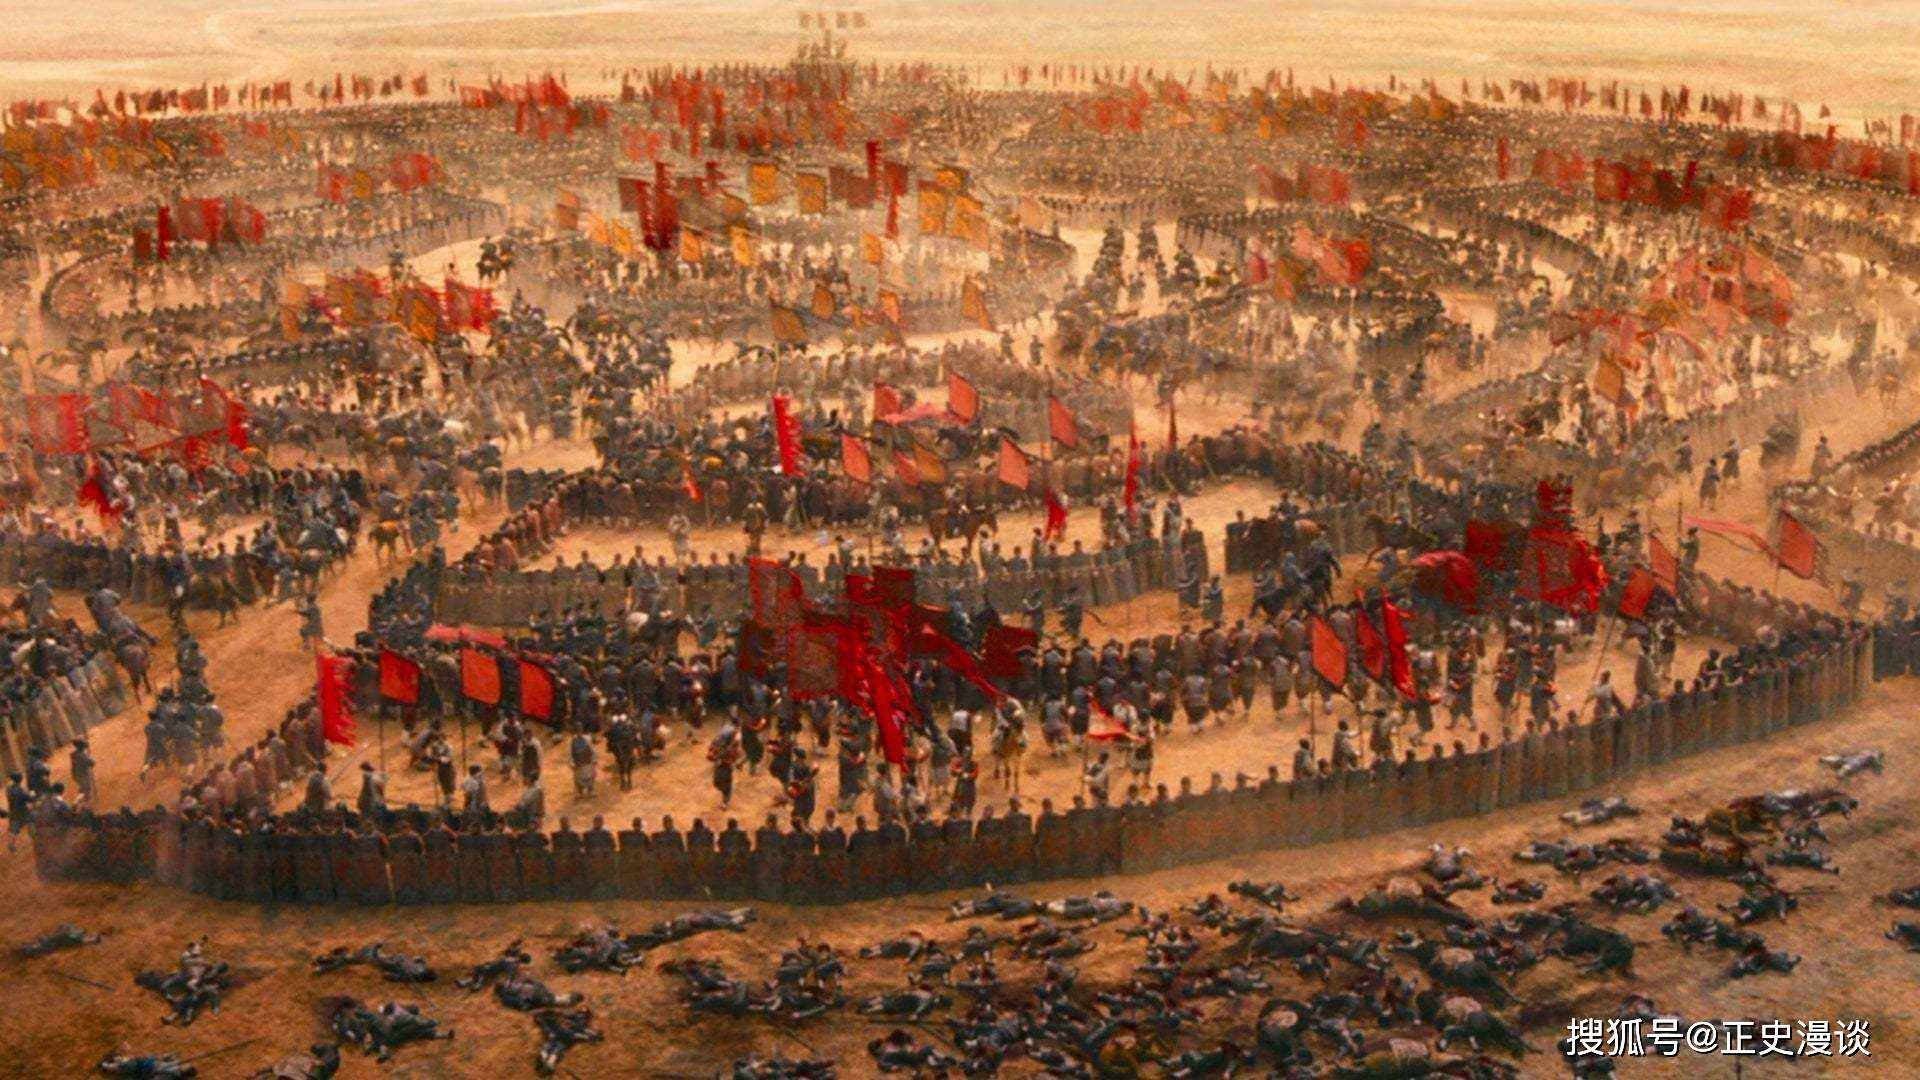 意外的李傕郭汜之乱:能够阻止三国局面的武装,为啥被王允放弃?